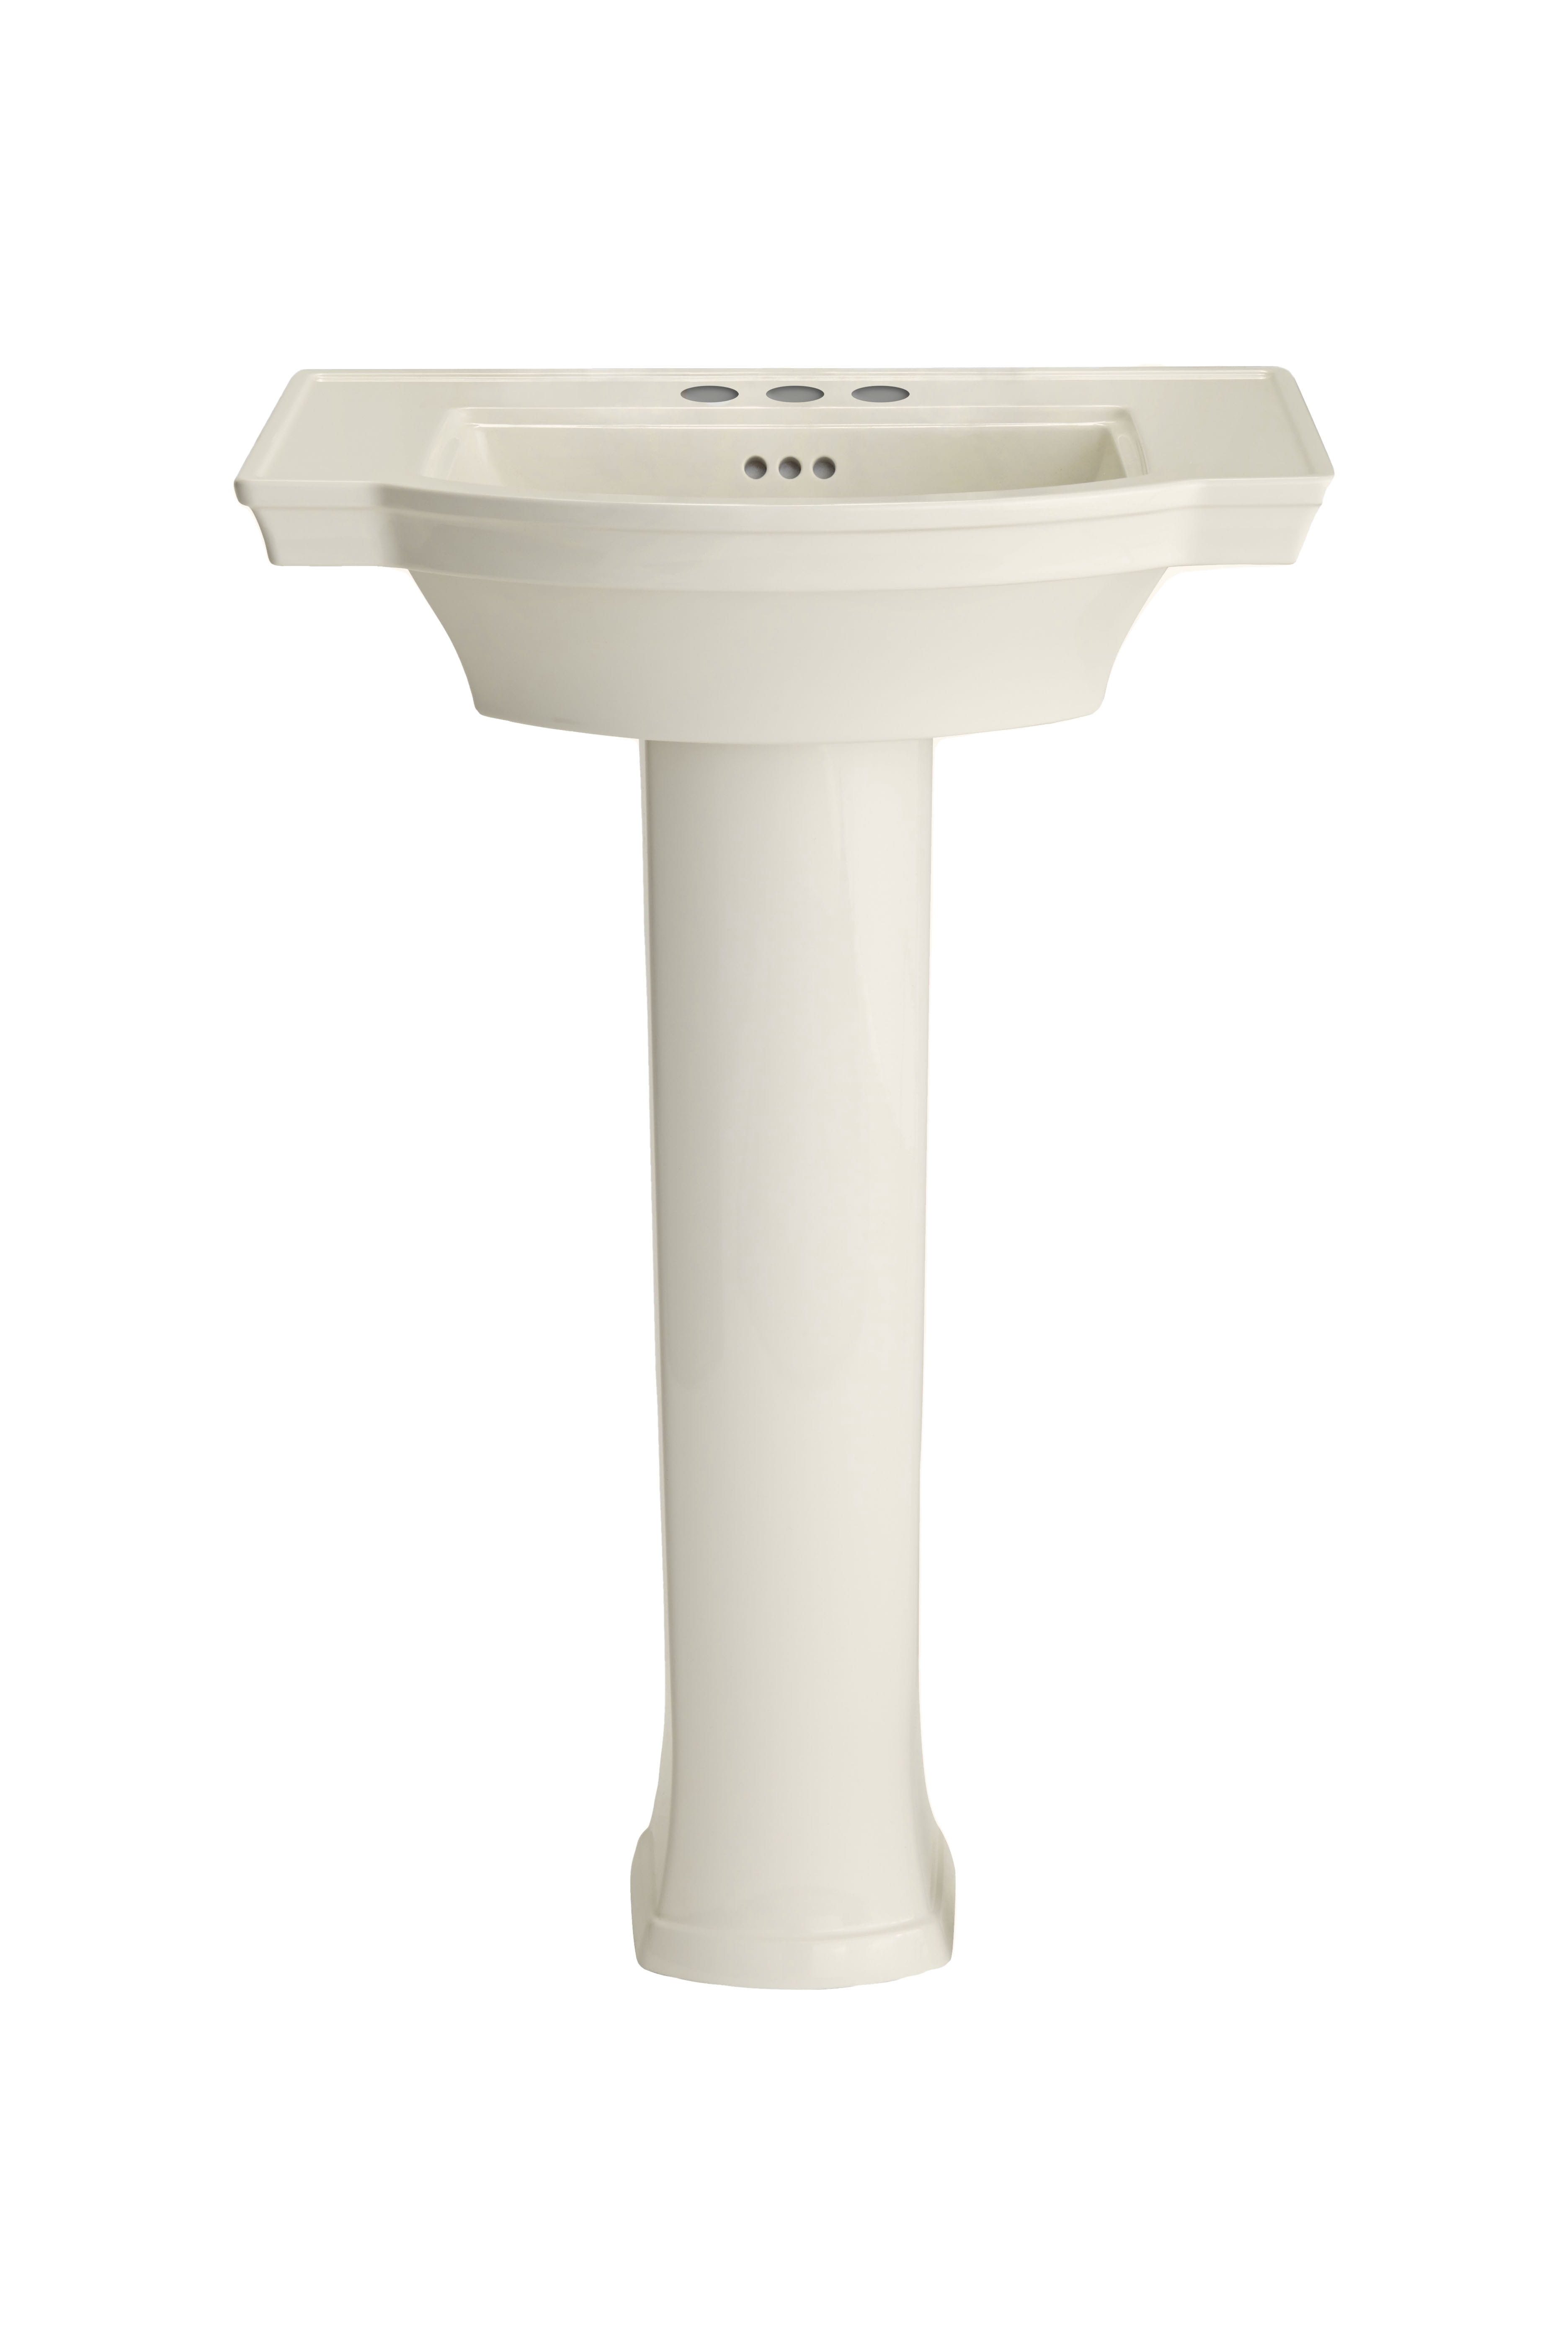 Estate® 4-Inch Centerset Pedestal Sink Top